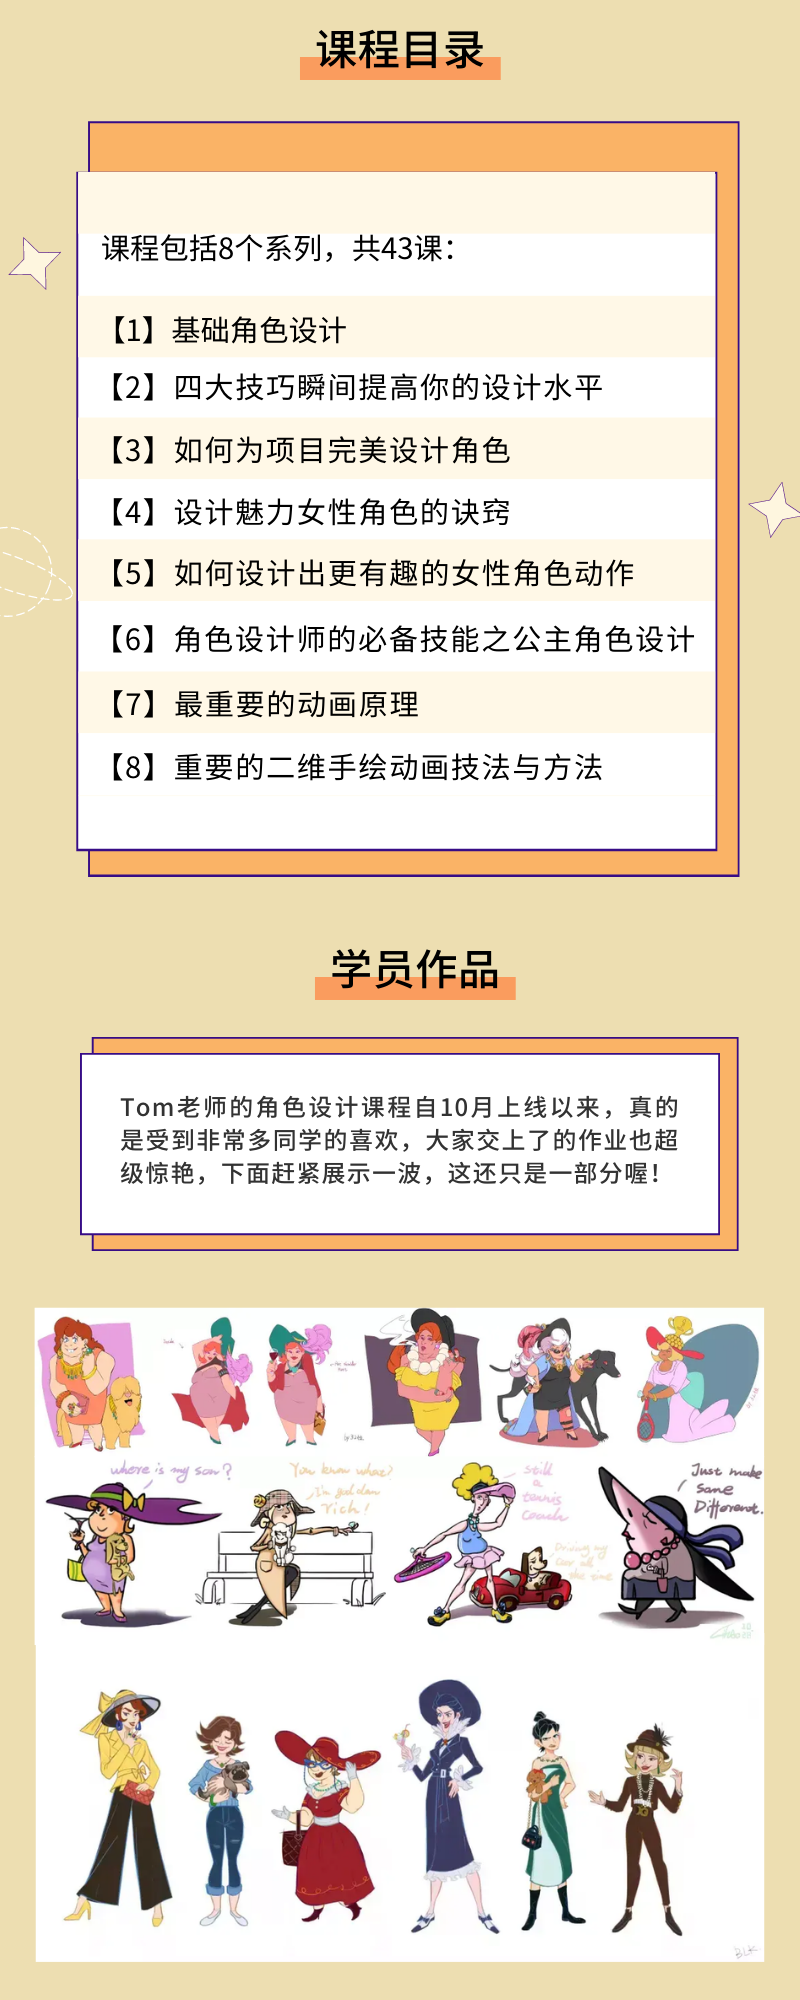 黄粉色描边学生人物创意插画手绘四六级教育促销中文信息图表.png